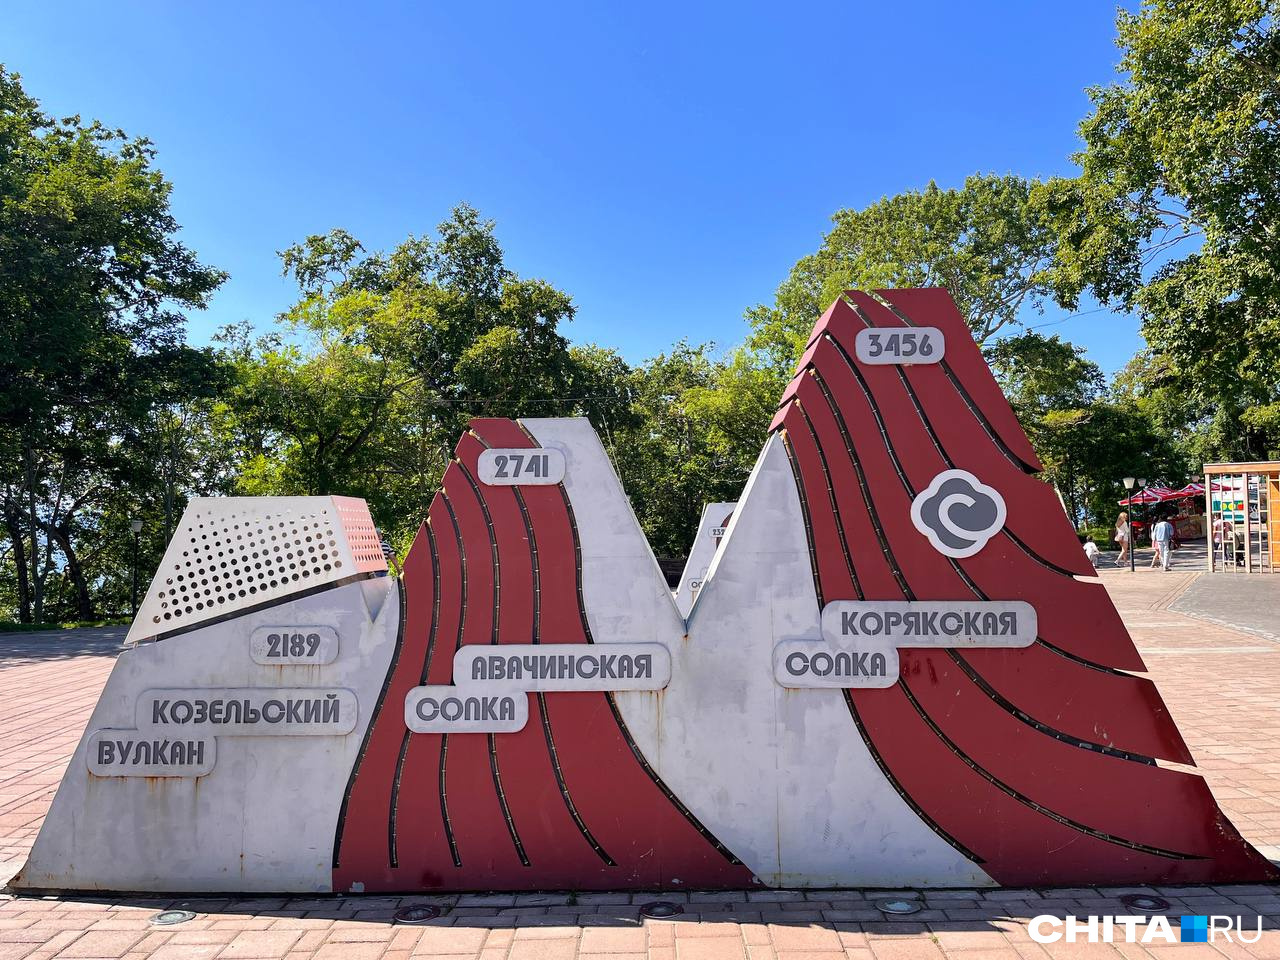 Памятник-памятка в парке «Никольская сопка»